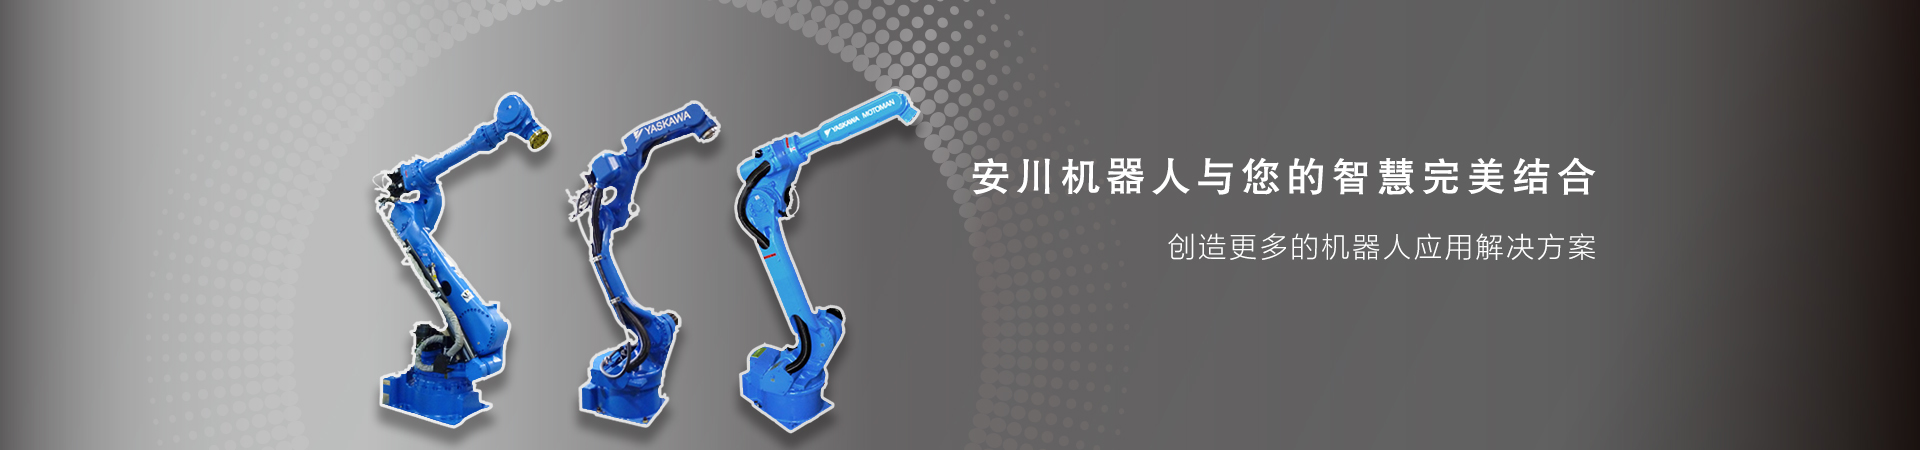 安川将向中国制造商开放其机器人核心部件的供